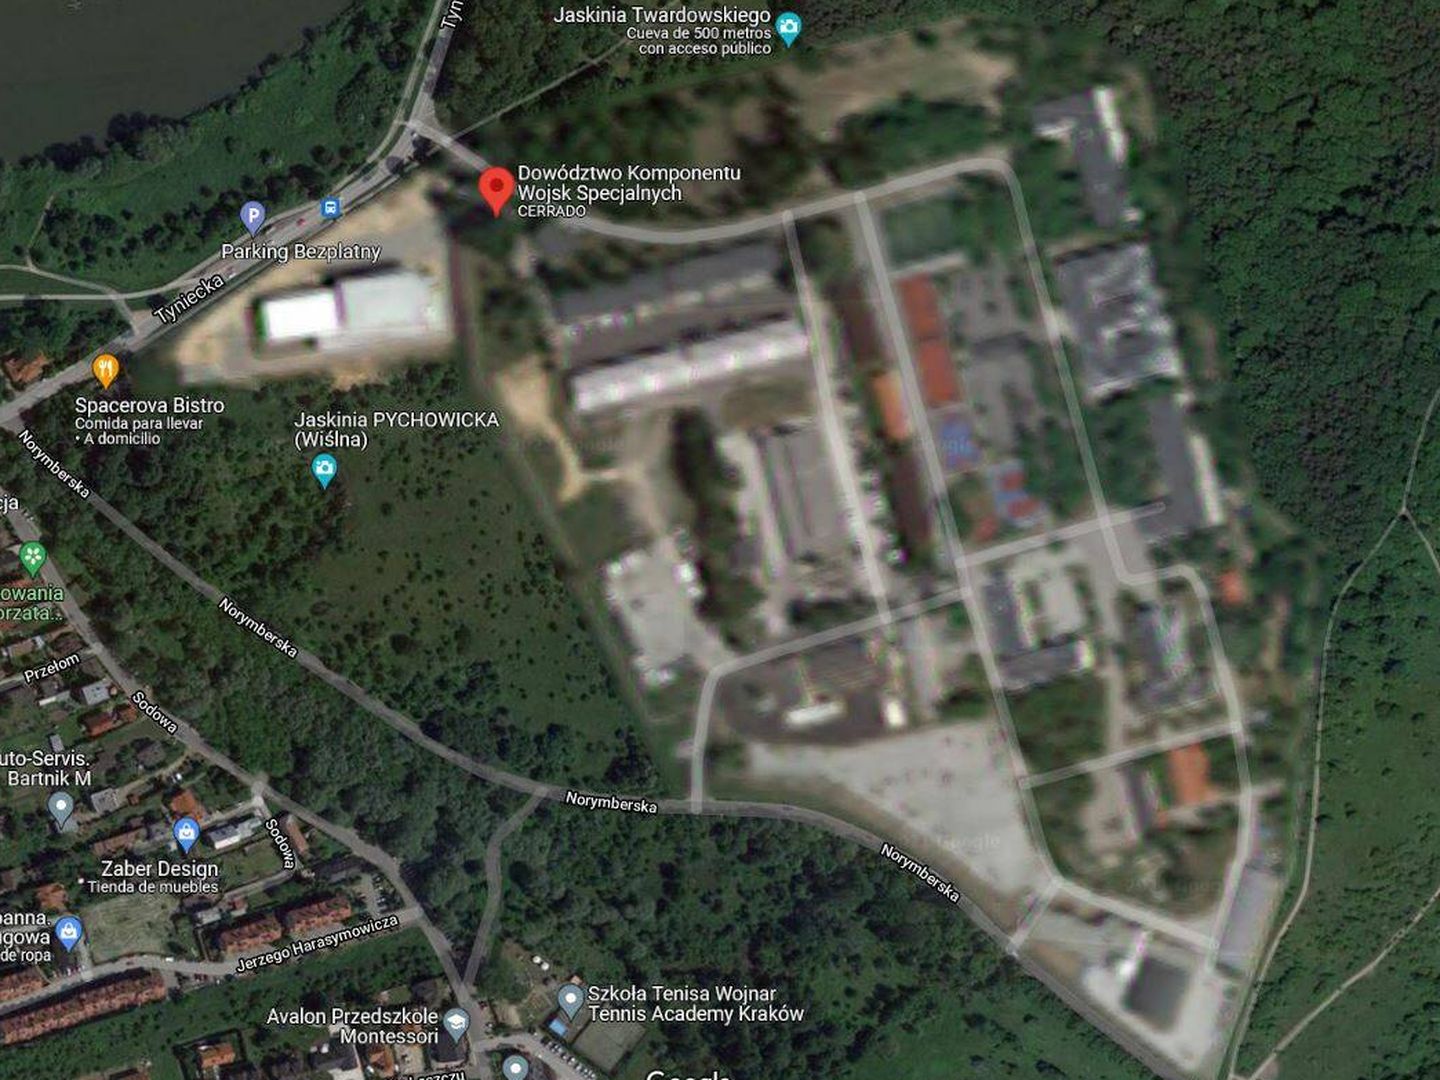 Antigua base de las fuerzas especiales polacas. (Google Maps)